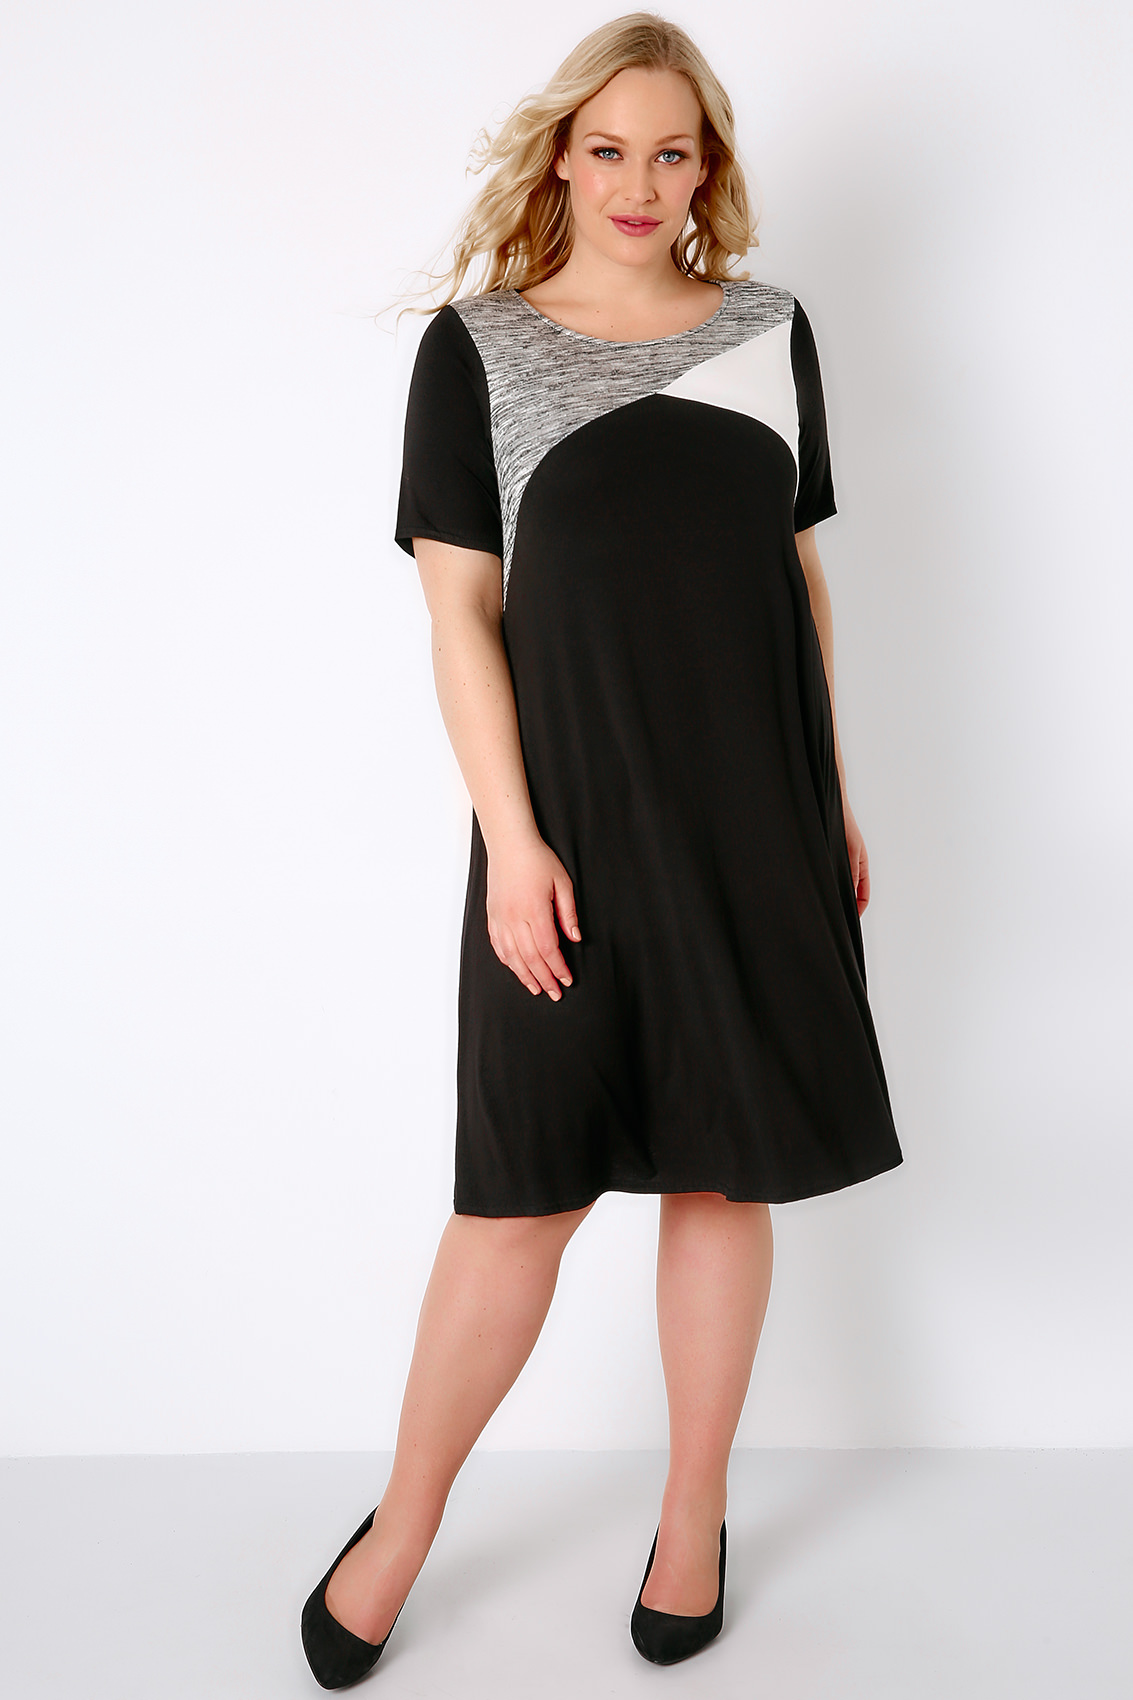 Black, White & Grey Colour Block Tunic Dress, Plus size 16 to 36